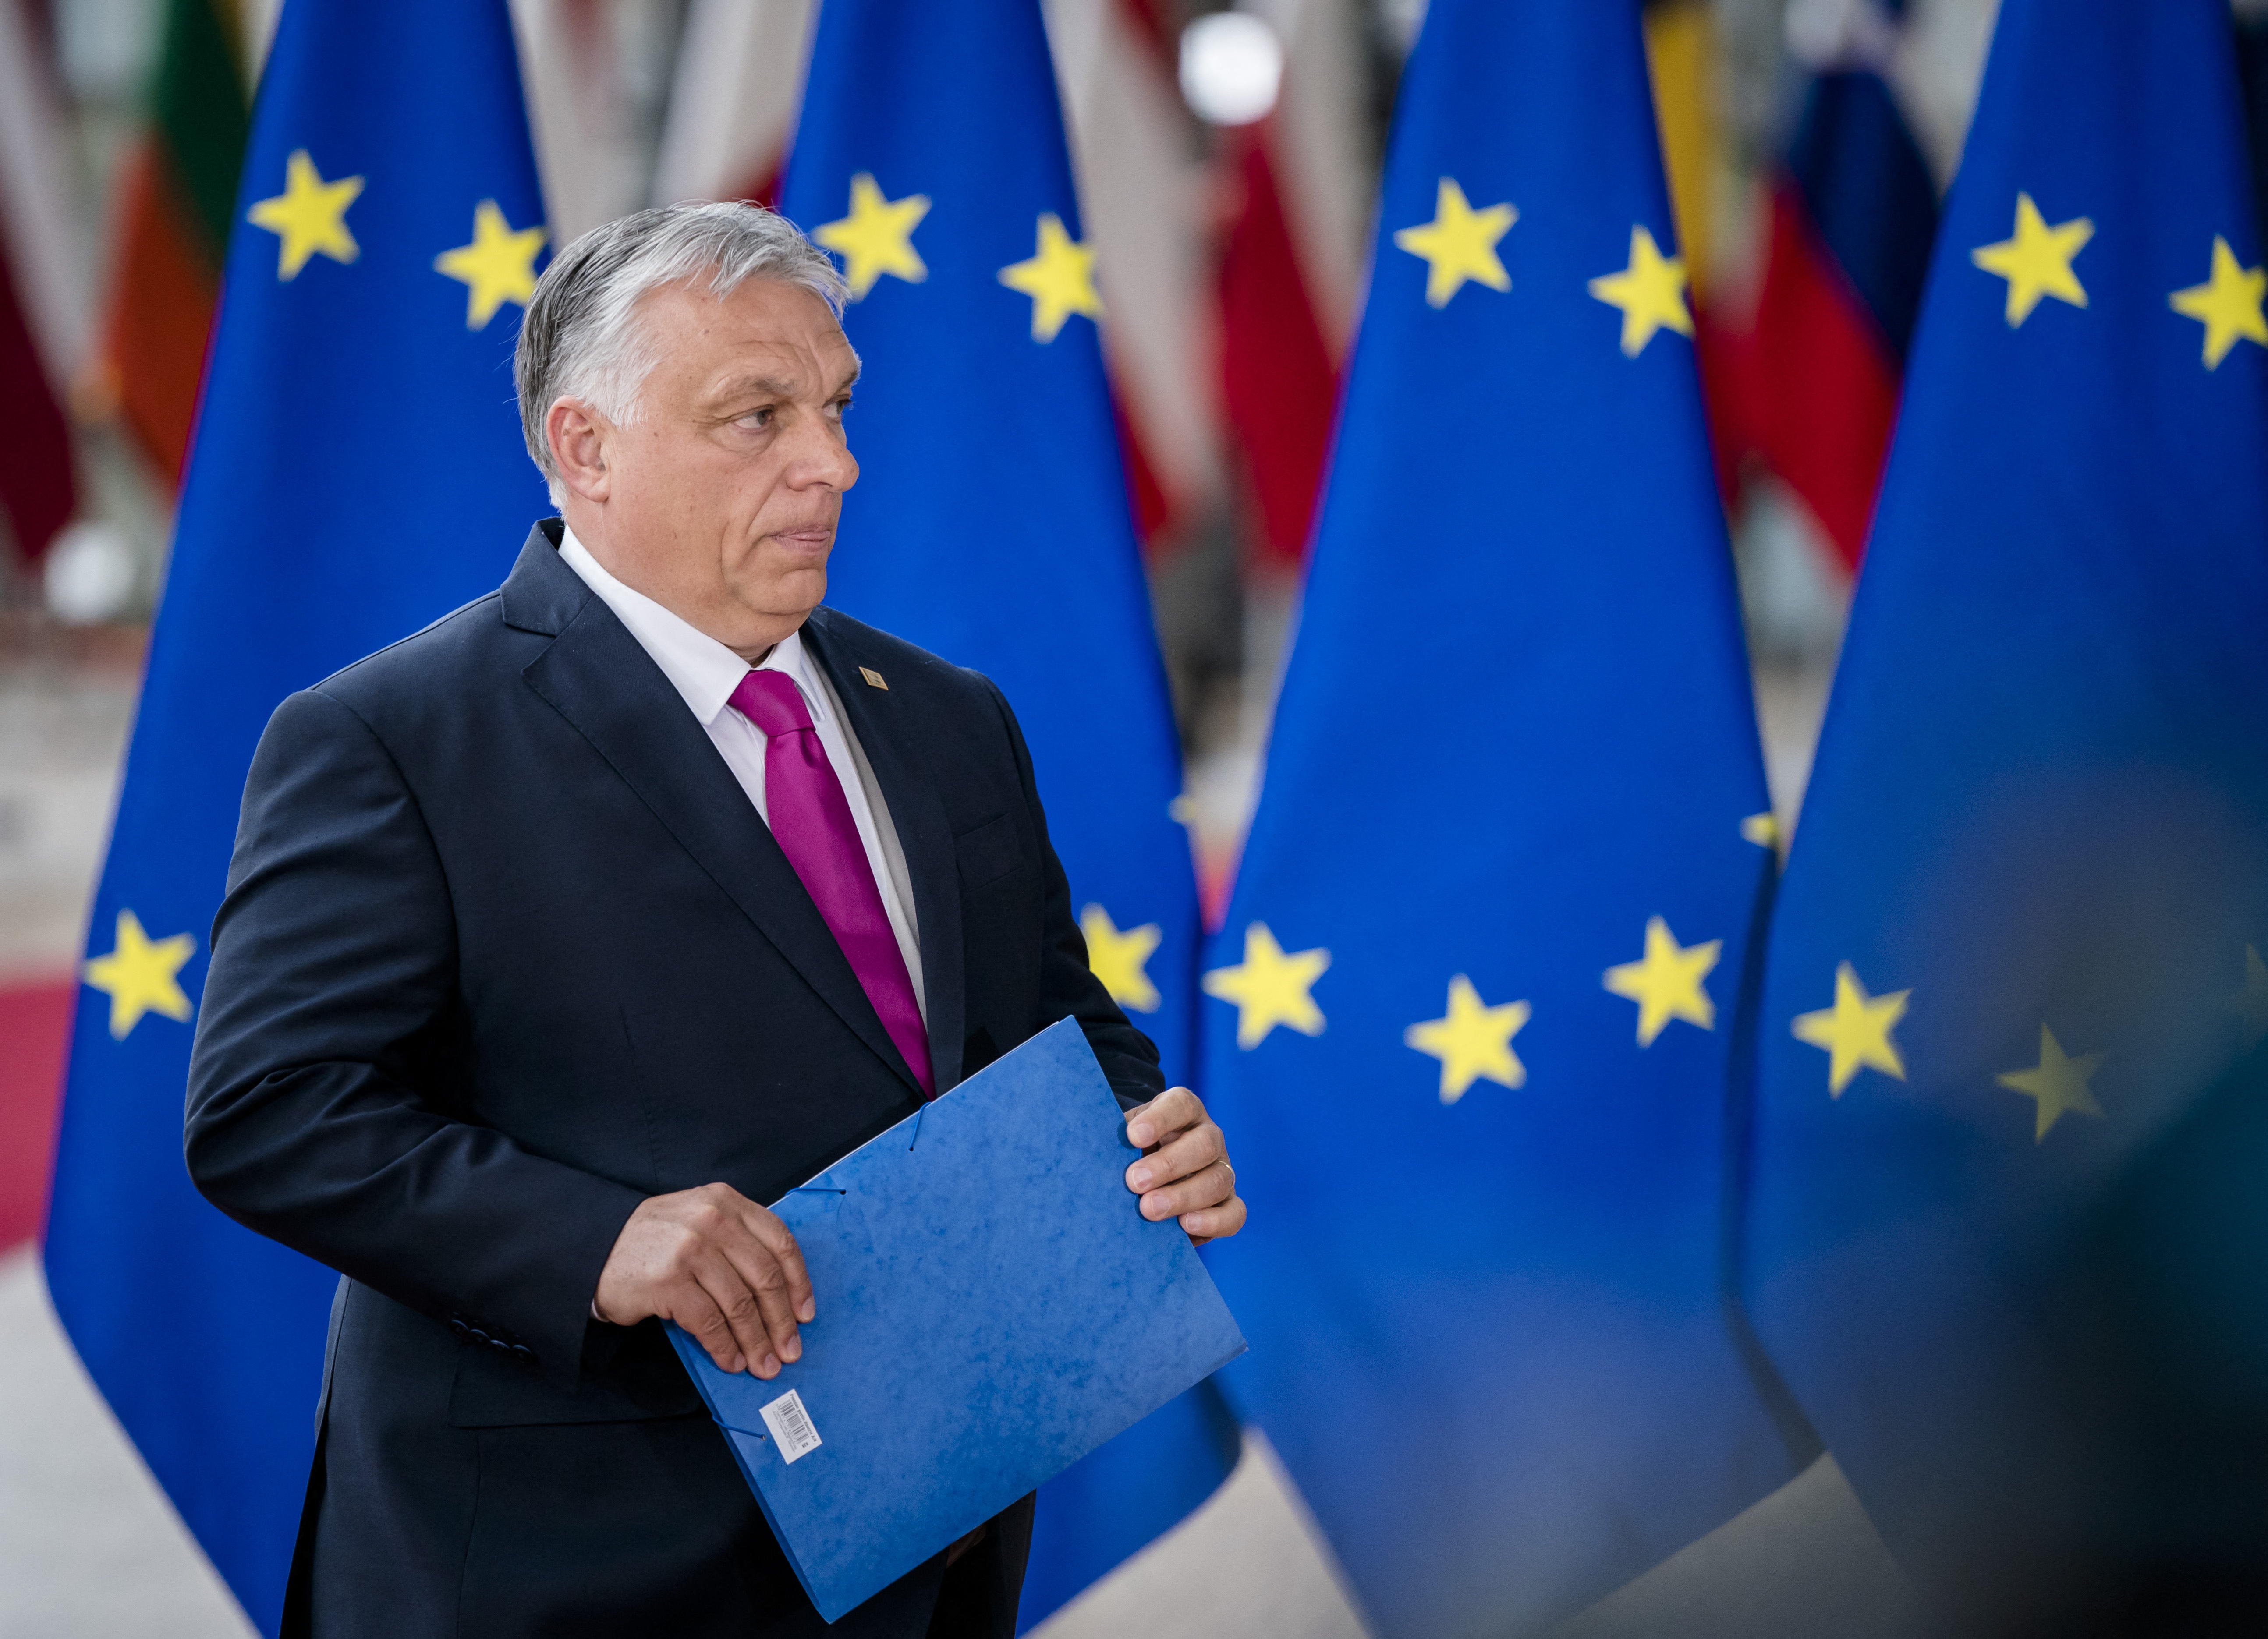 44 EP-képviselő kéri levélben Orbánt, hogy álljon a történelem jó oldalára